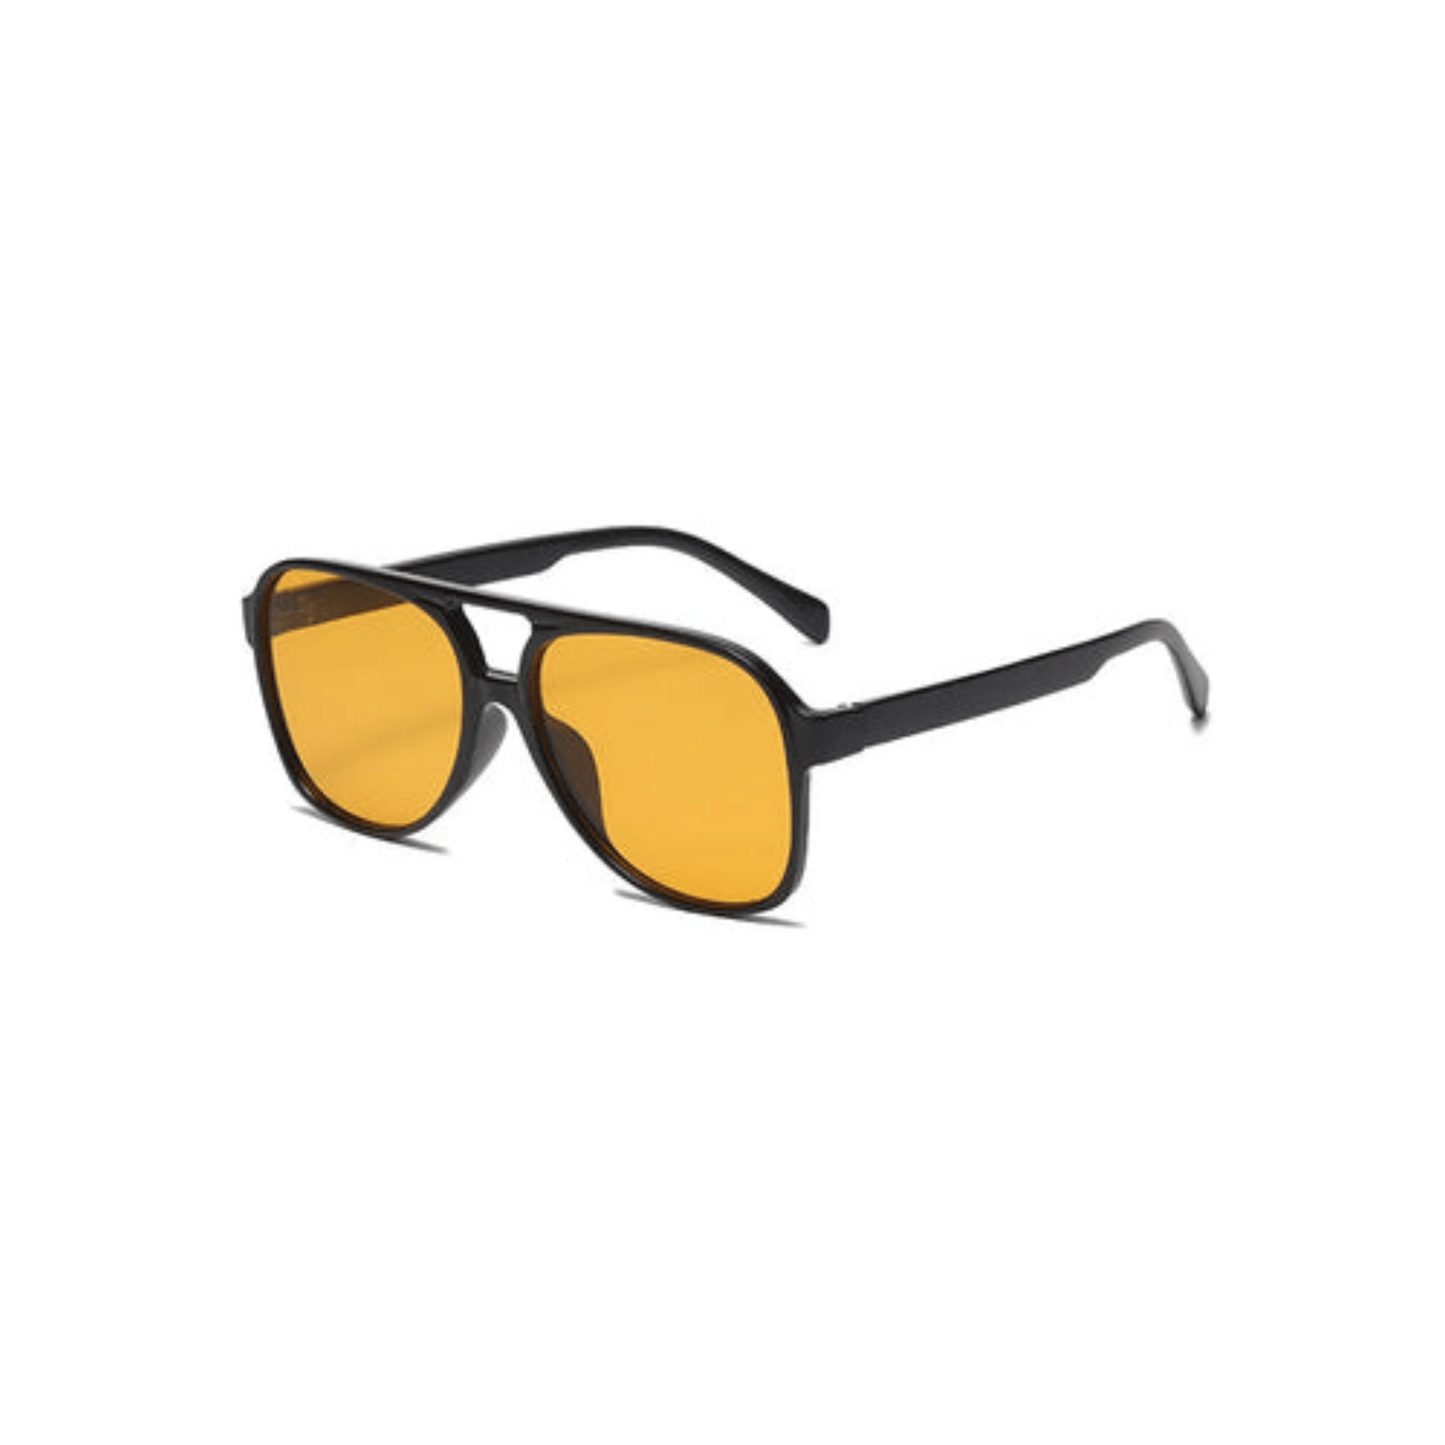 aviator sunglasses orange lens black frame desert festival accessories